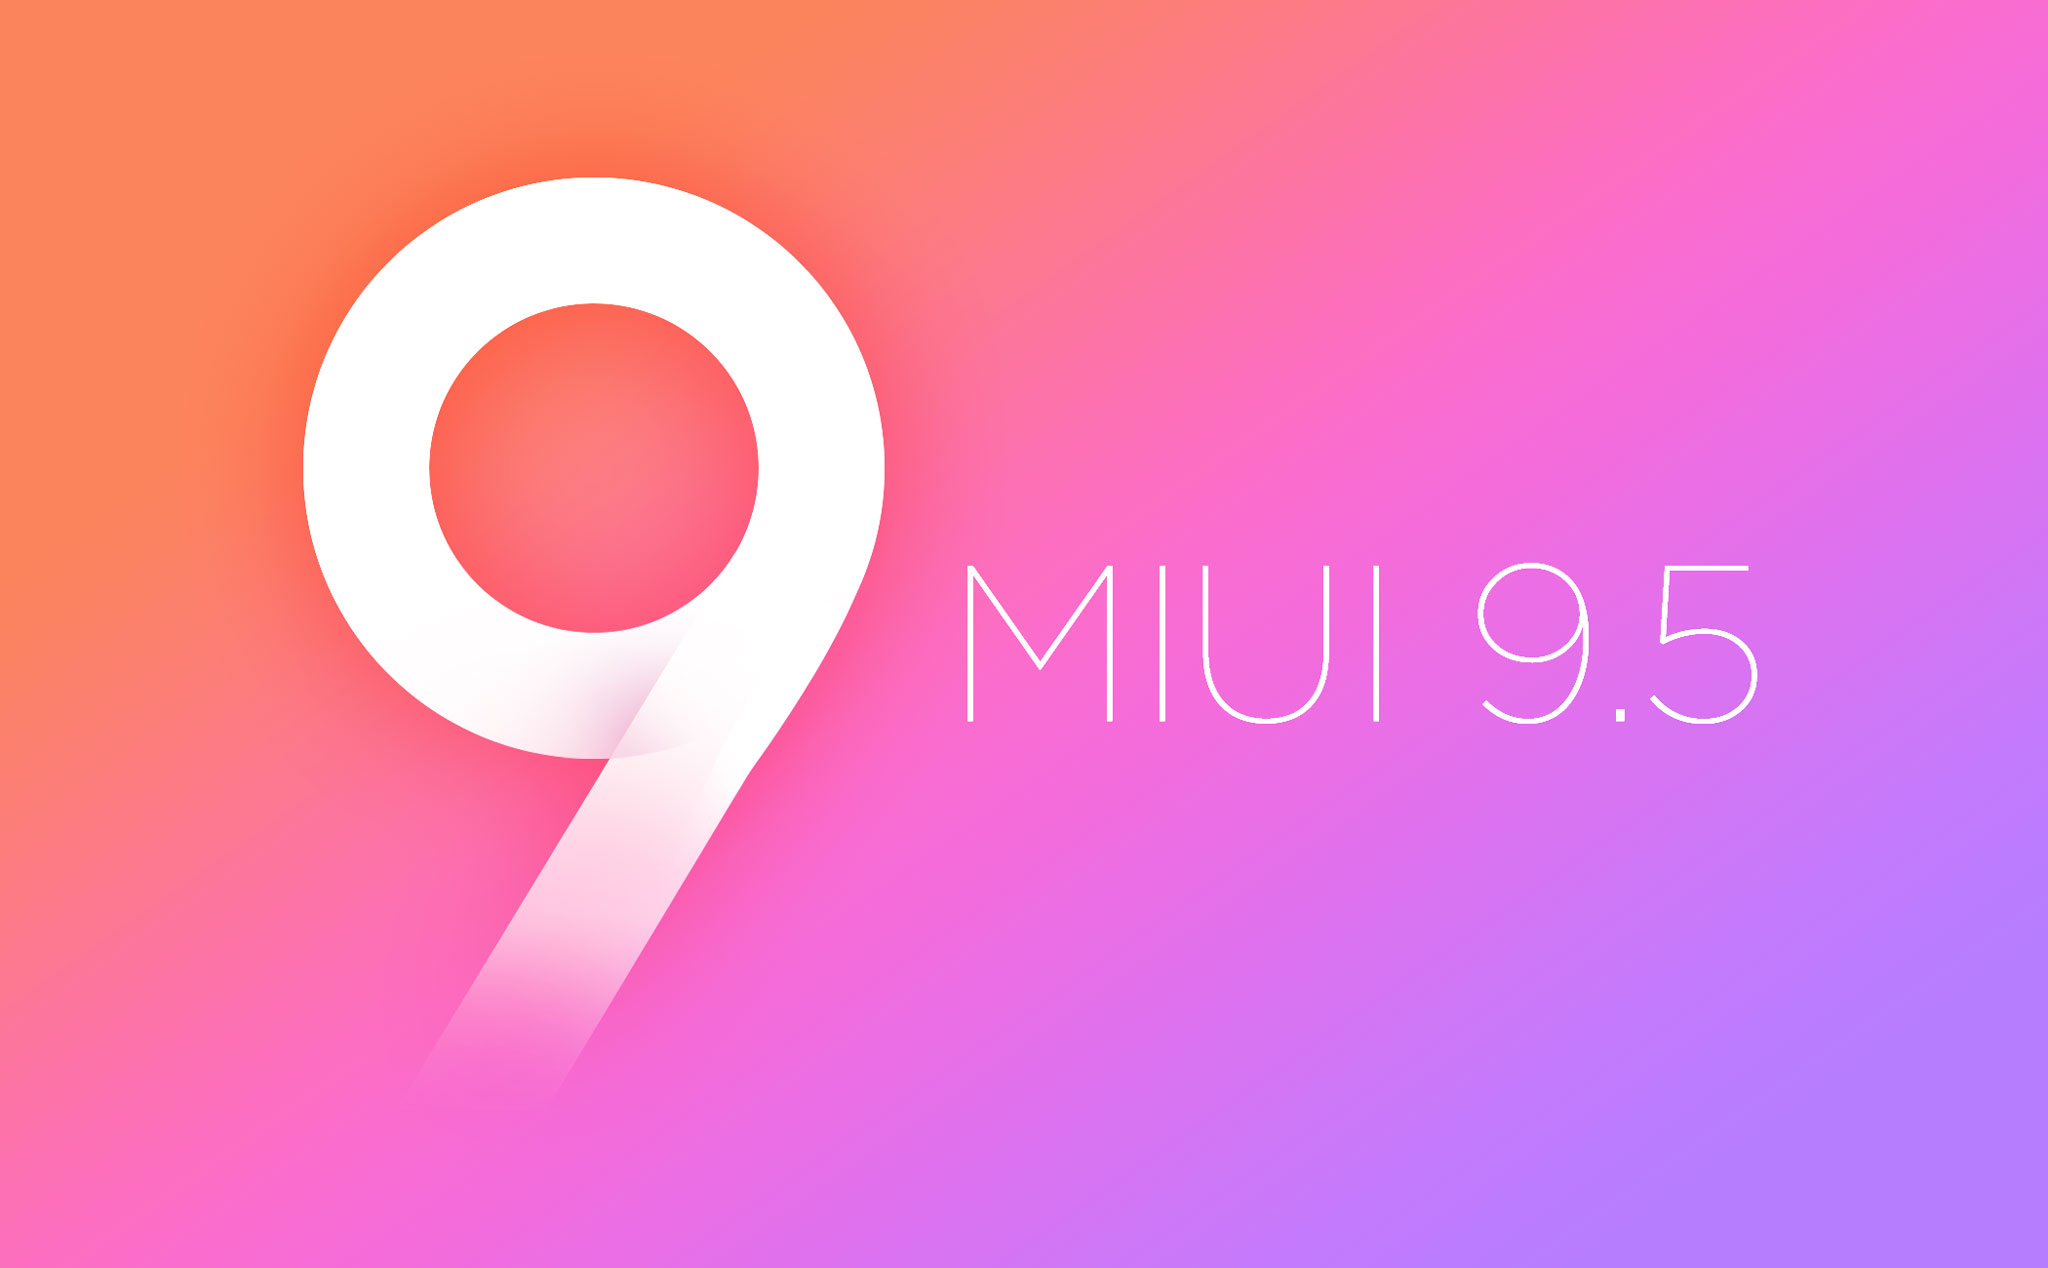 Cảm nhận MIUI 9.5: chạy nhanh, dám nghĩ, dám làm để phục vụ người dùng